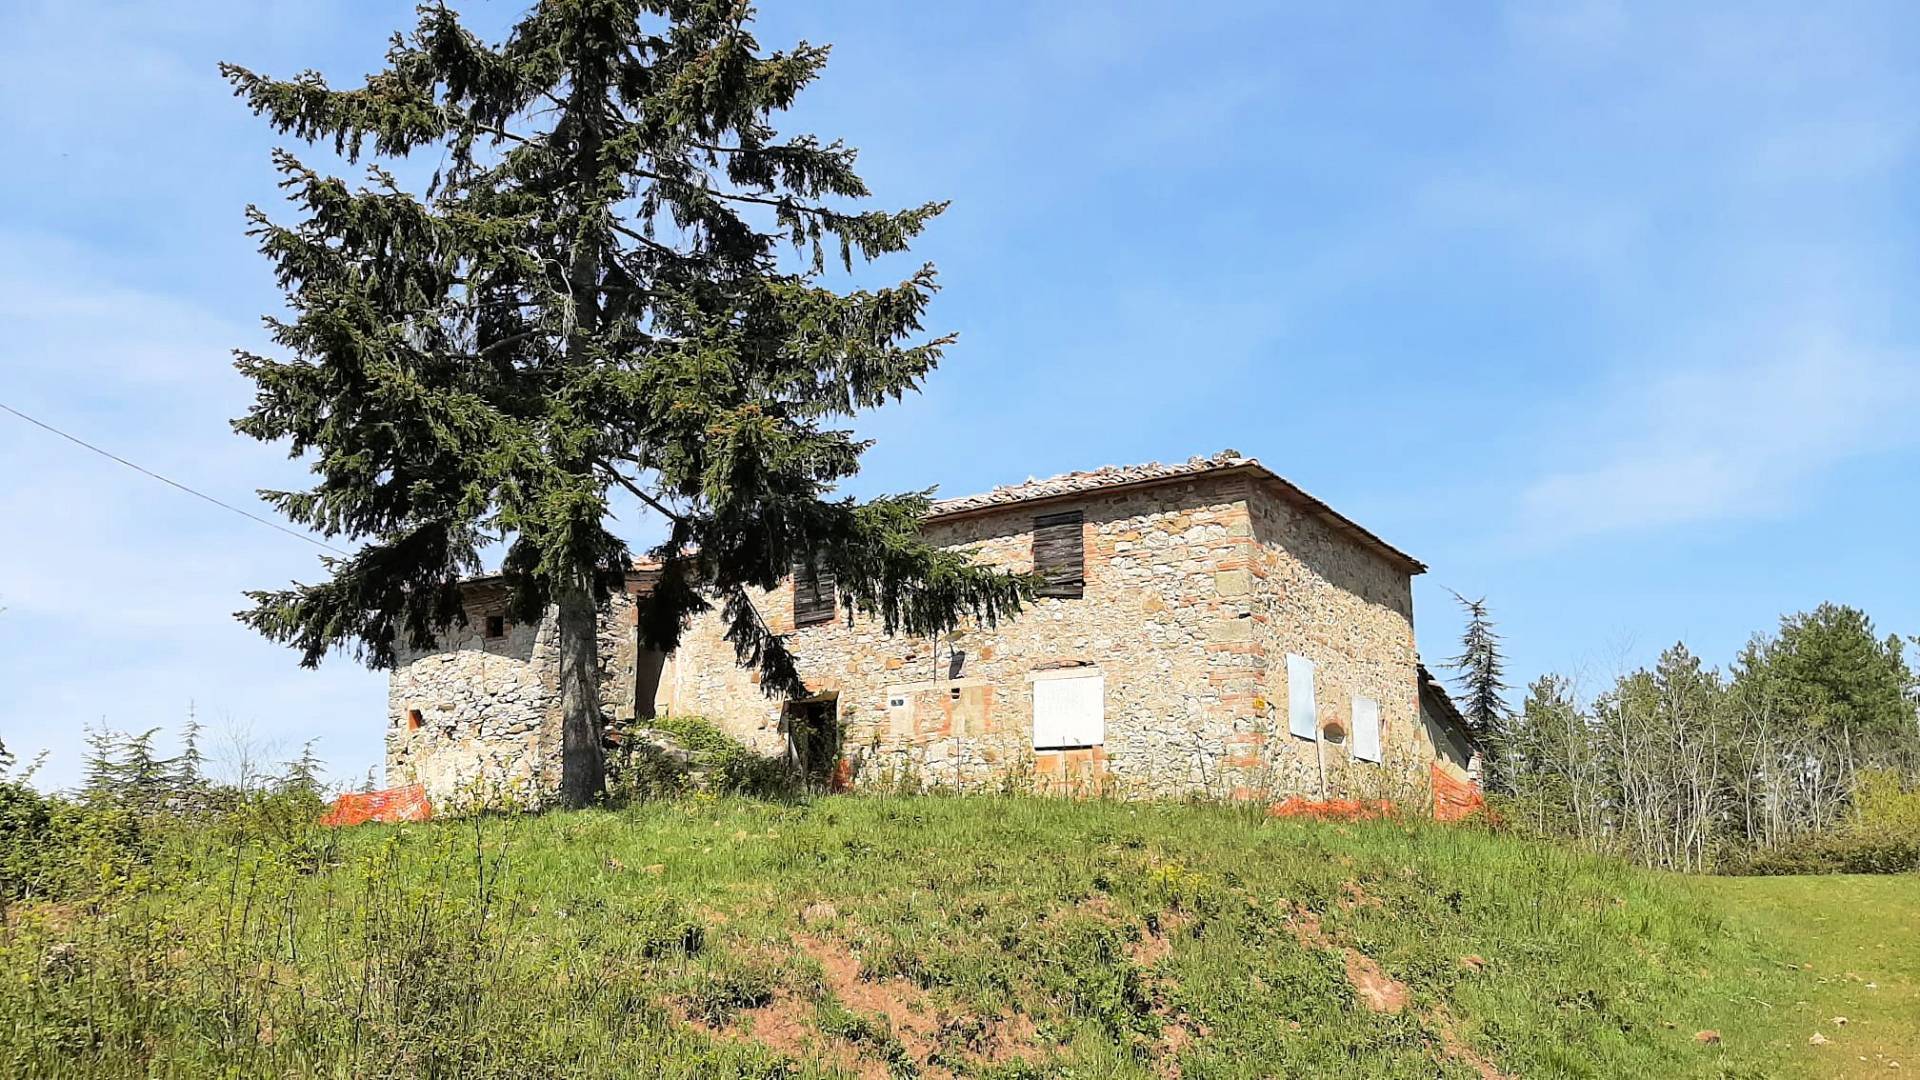 Rustico / Casale in vendita a Gaiole in Chianti, 9 locali, prezzo € 330.000 | PortaleAgenzieImmobiliari.it